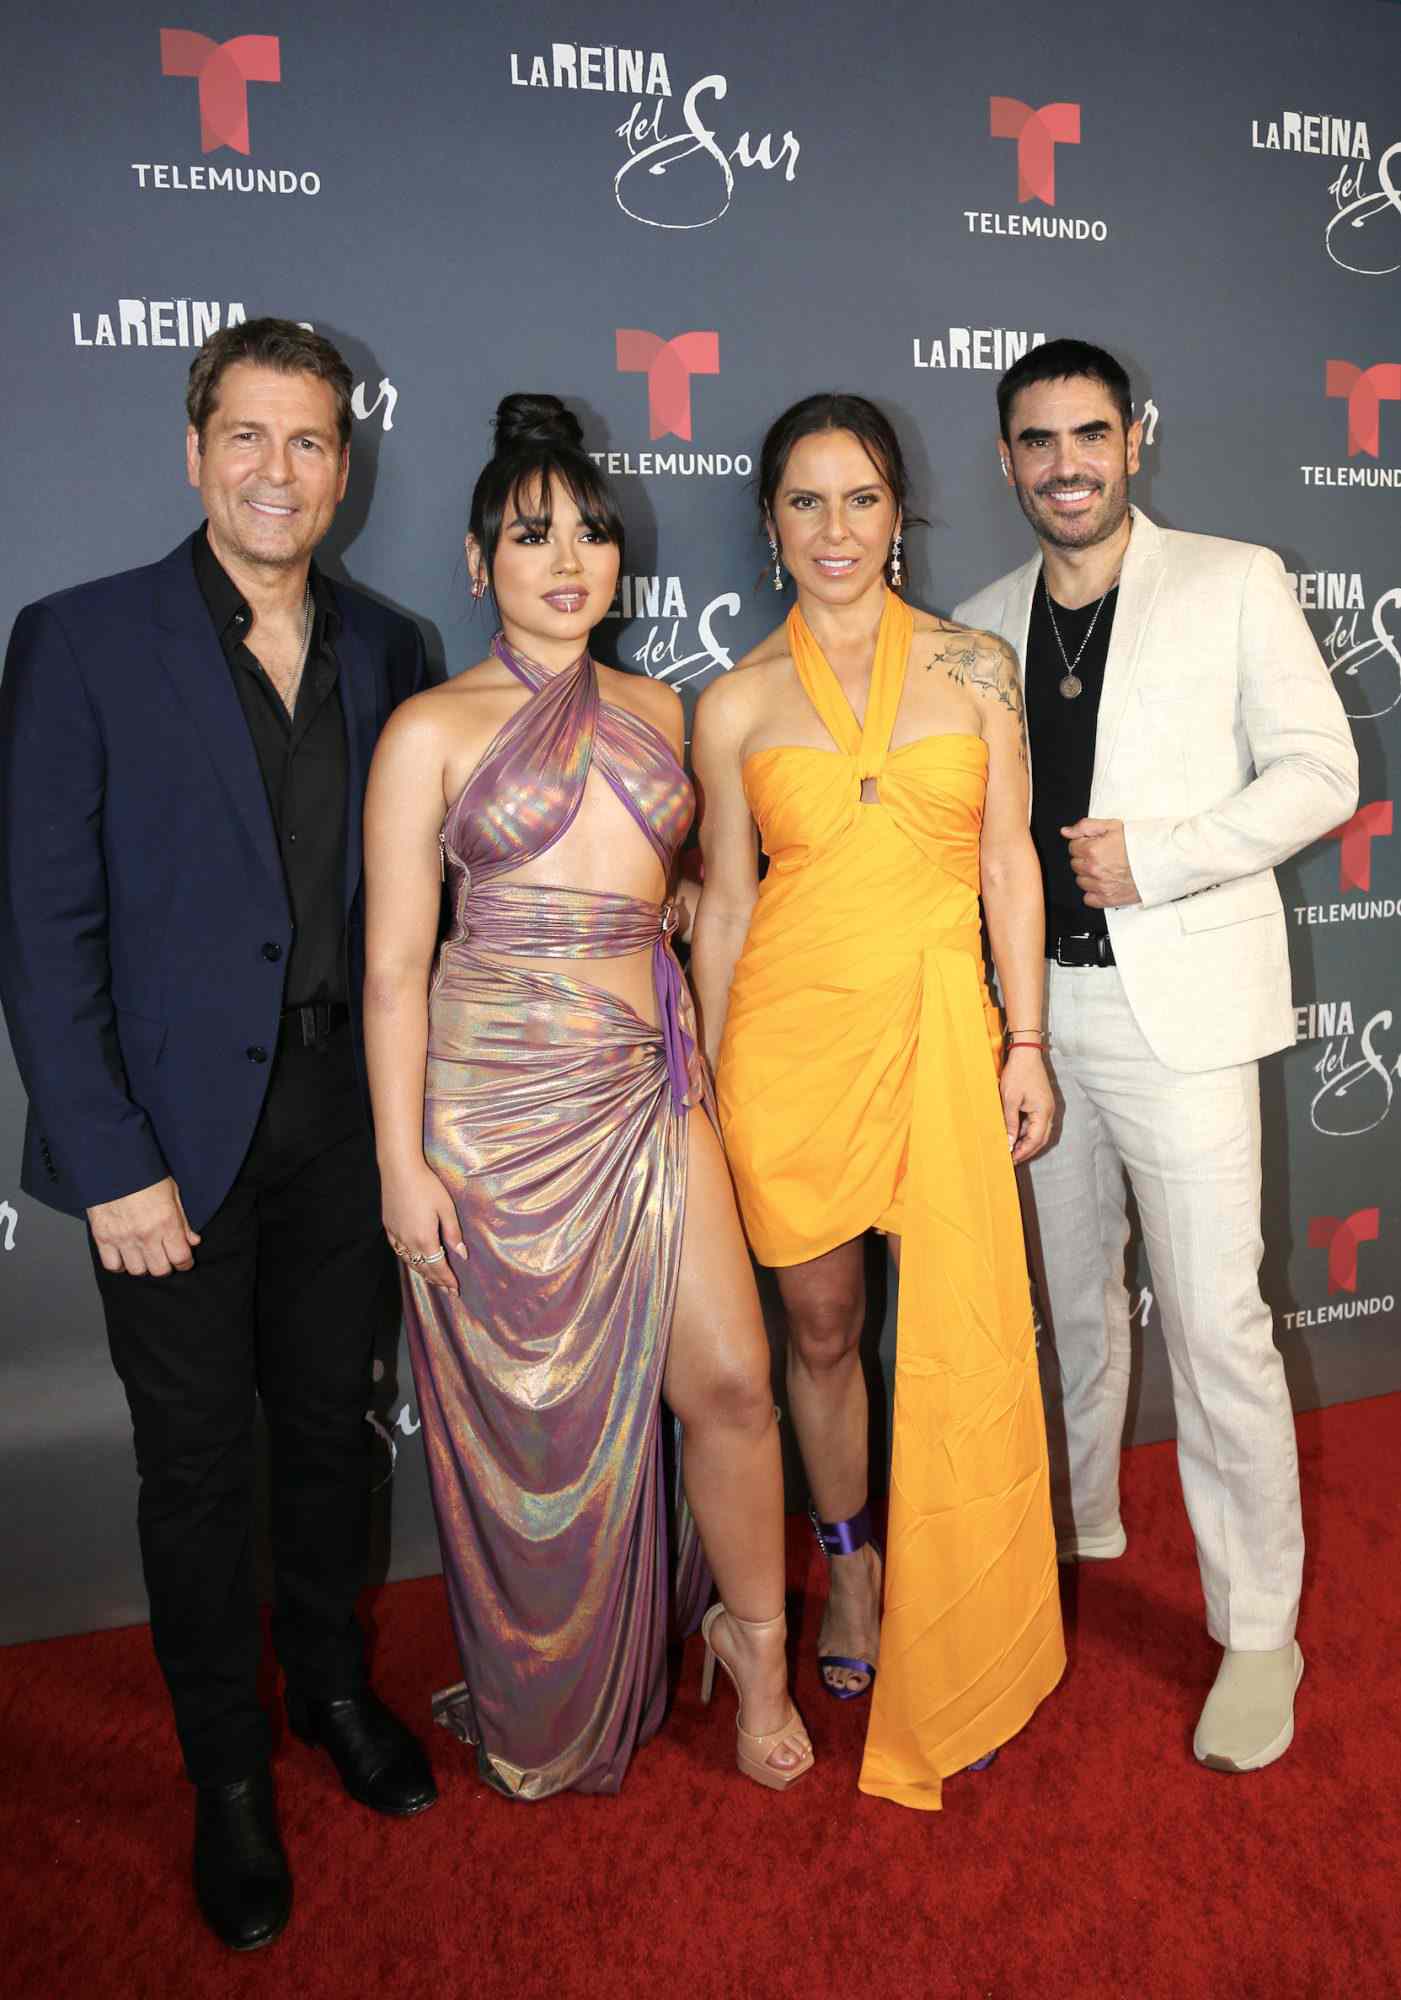 Kate del Castillo con Pepe Rapazote, Isabella Sierra y Linconln Palomeque en la premiere en Miami de la tercera temporada de "La Reina del Sur"